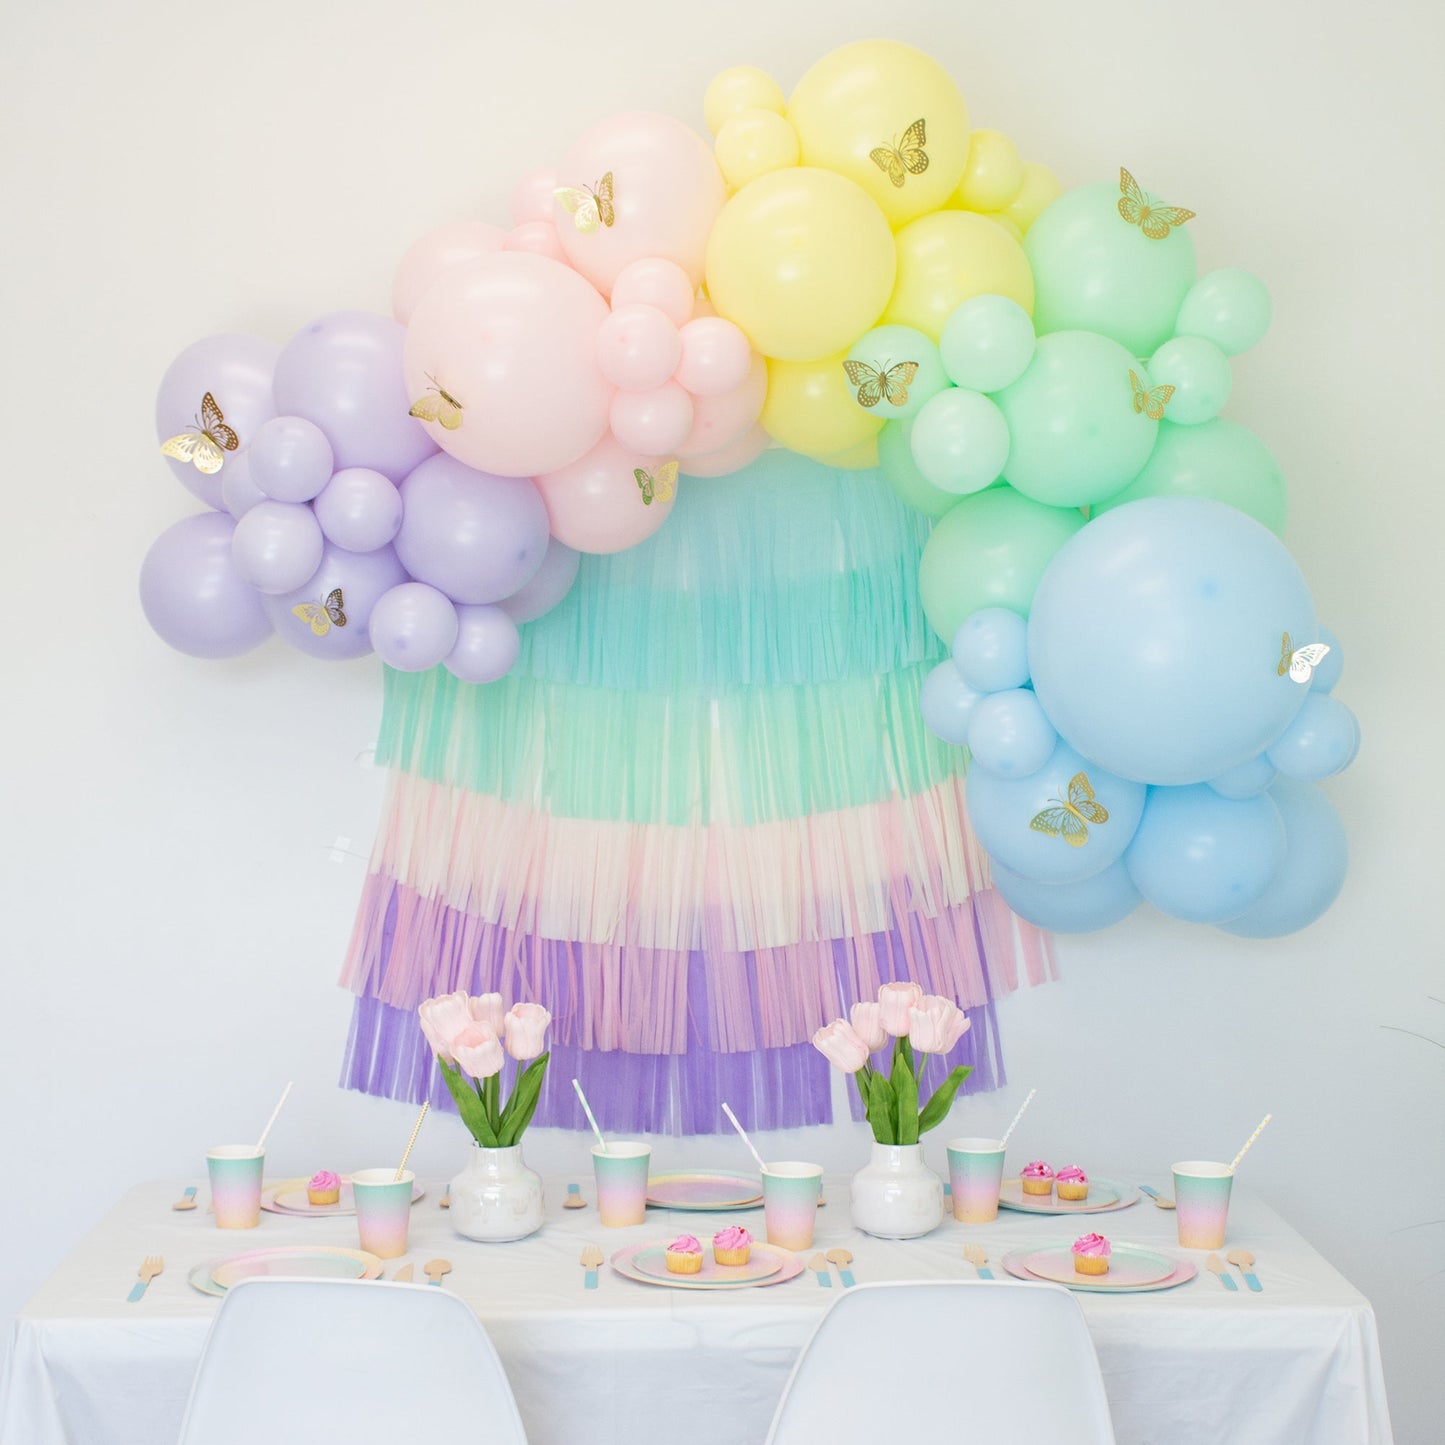 Rainbow Balloon Arch - Pastel Balloon Garland Kit - Ellie's Party Supply